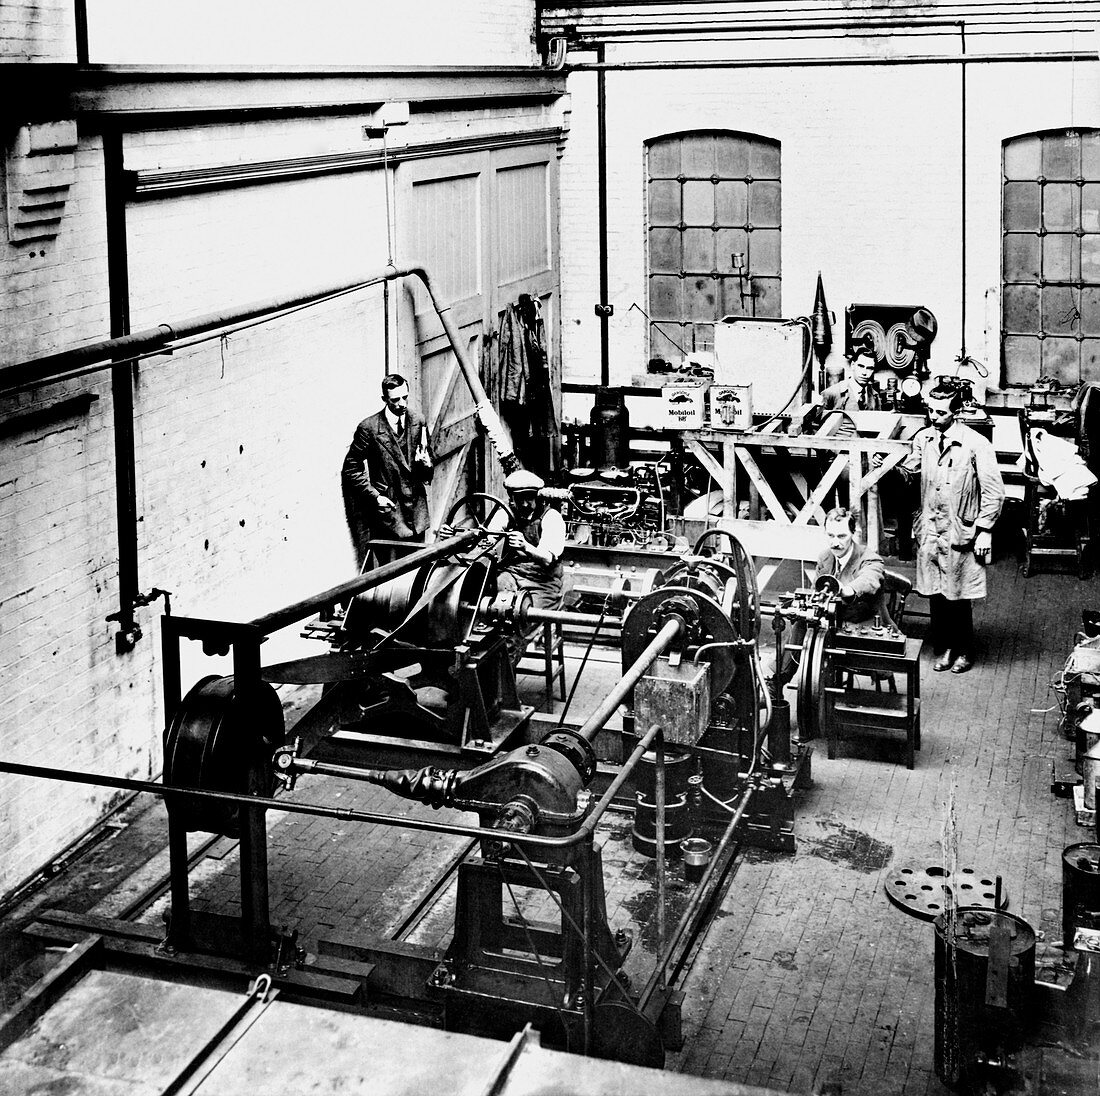 Testing gear lubricants,1920